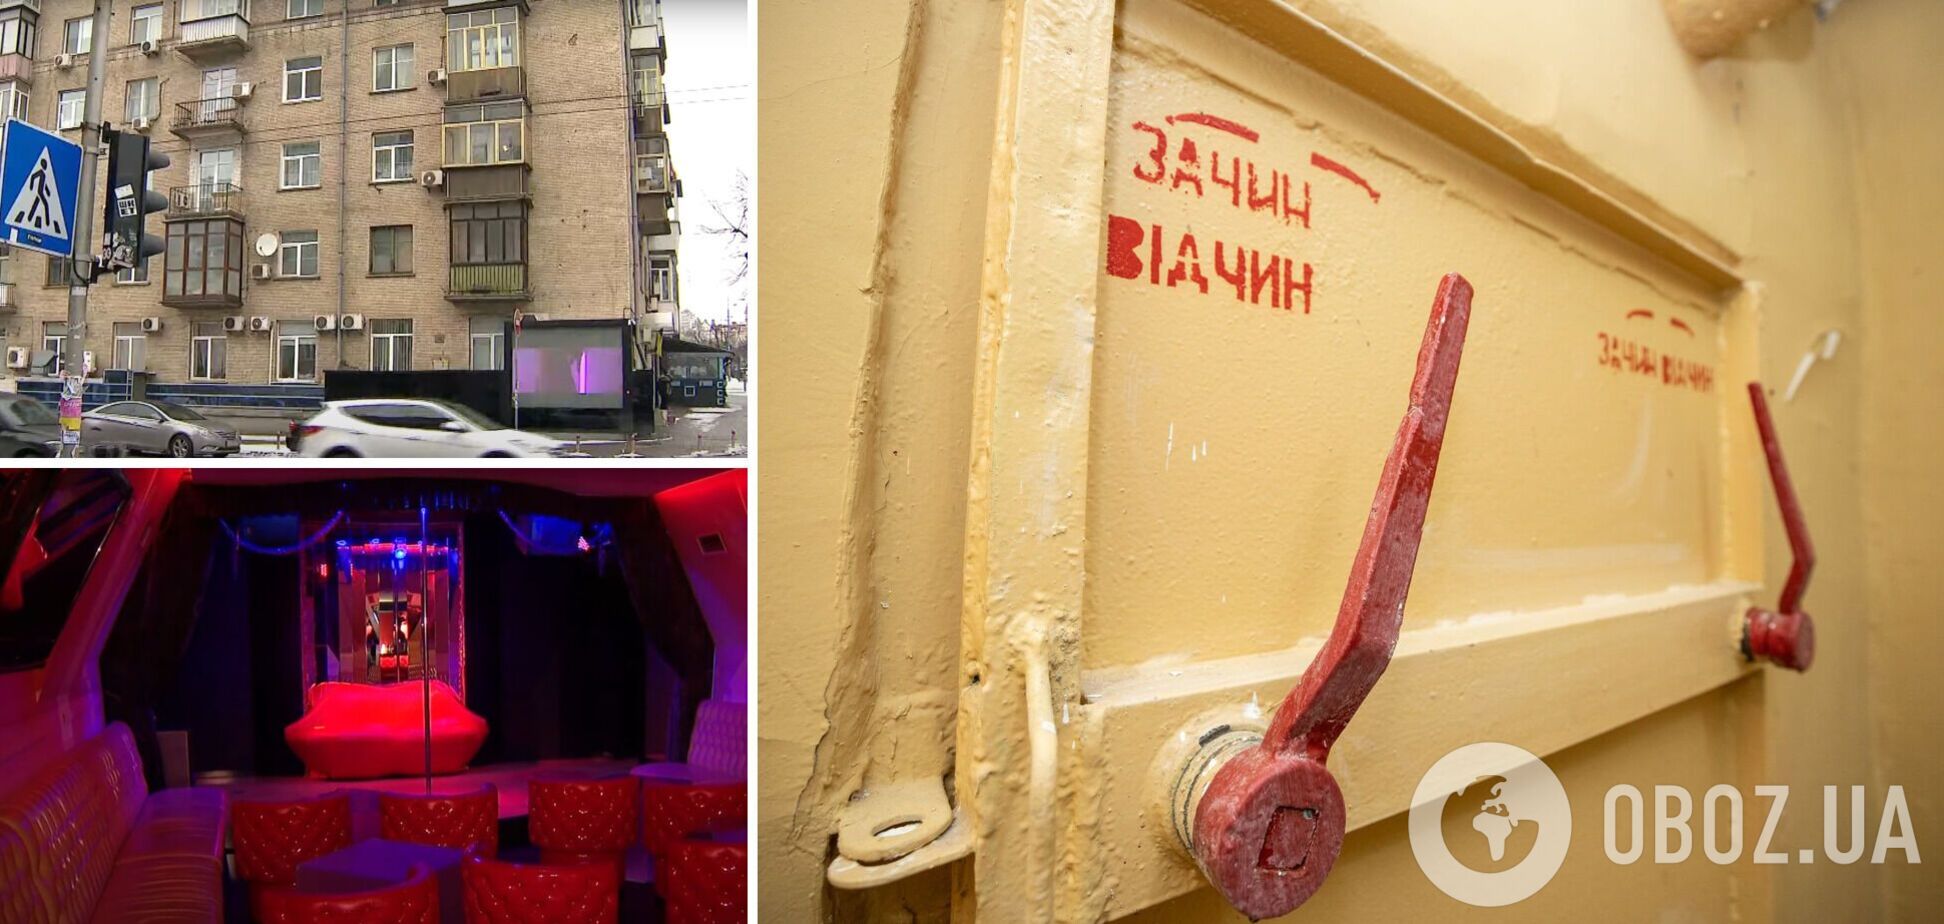 У київському бомбосховищі обладнали стриптиз-клуб. Фото і відео